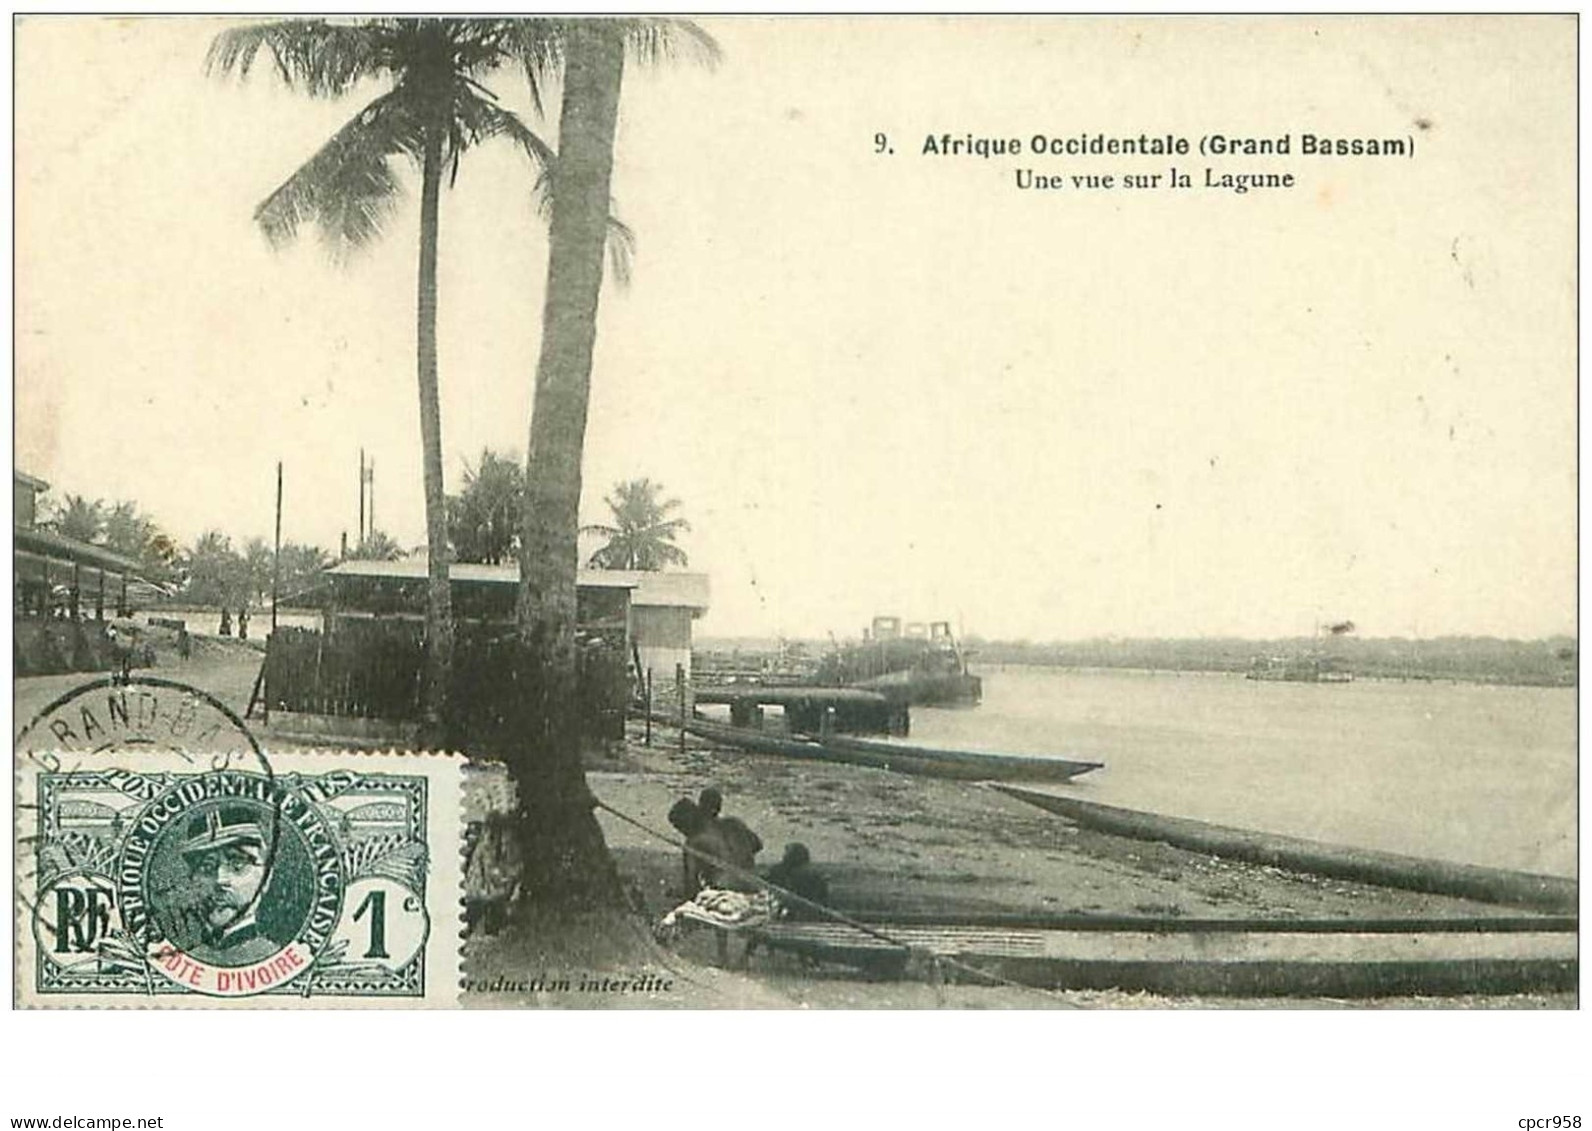 Cote D Ivoire. N°35373.une Vue Sur La Lagrune. Afrique Occidentale.grand Bassam - Ivory Coast